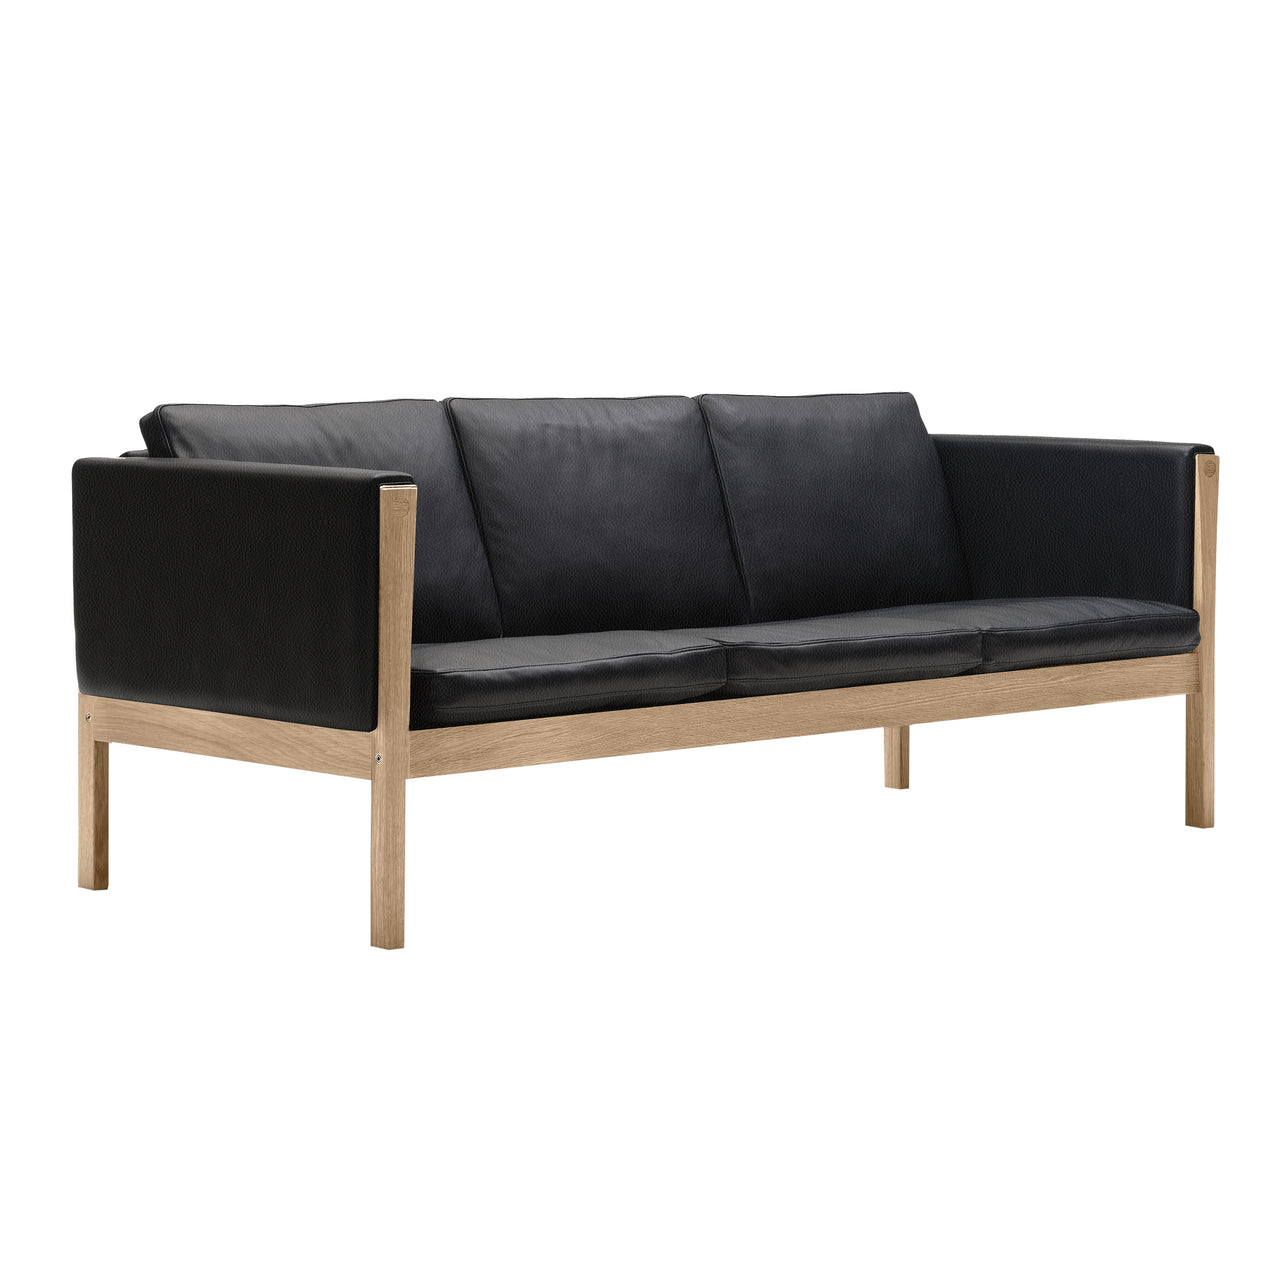 CH163 3 Seater Sofa: Oiled Oak